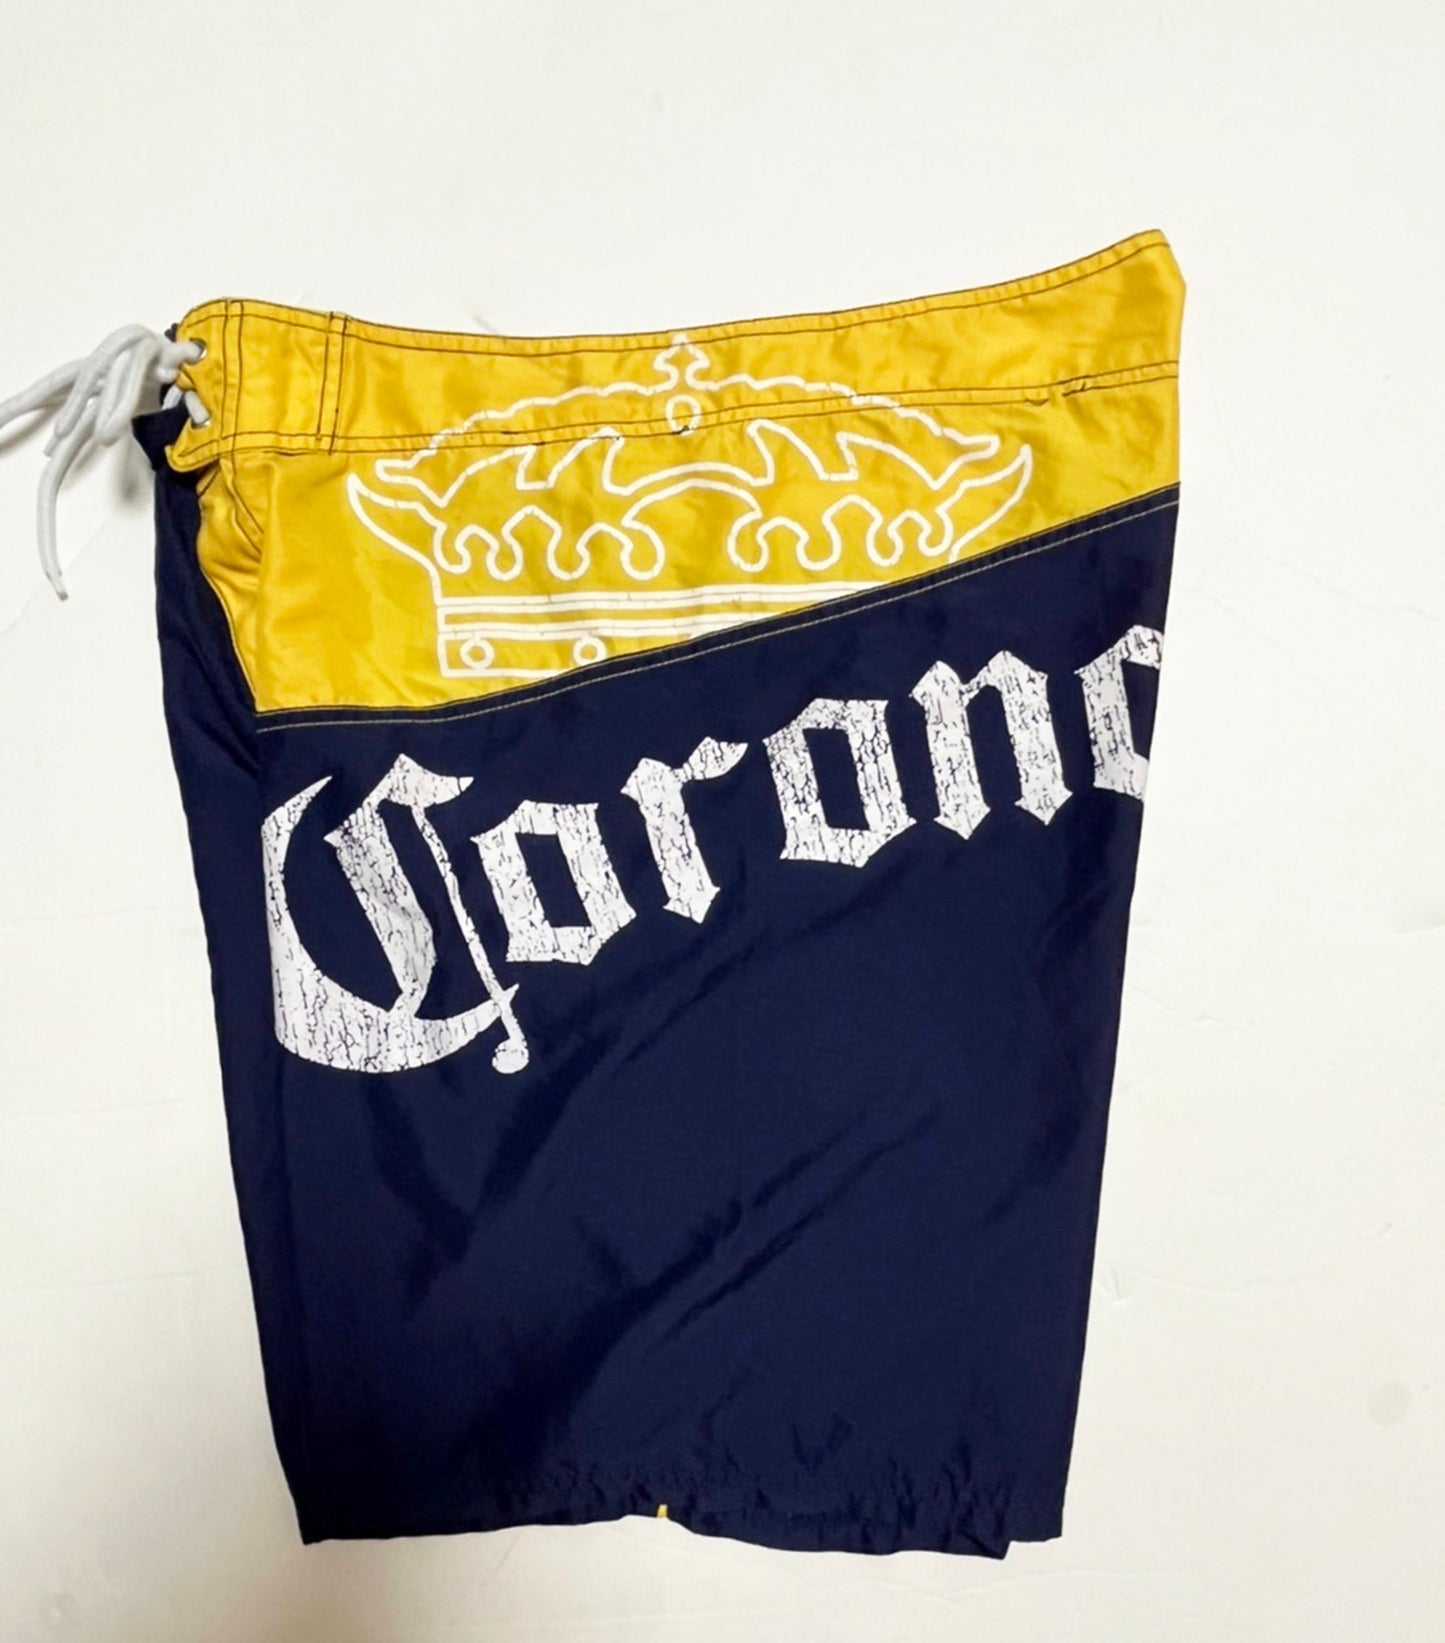 【CORONA】90's コロナビール 公式 ボードショーツ 海パン (men's L相当）